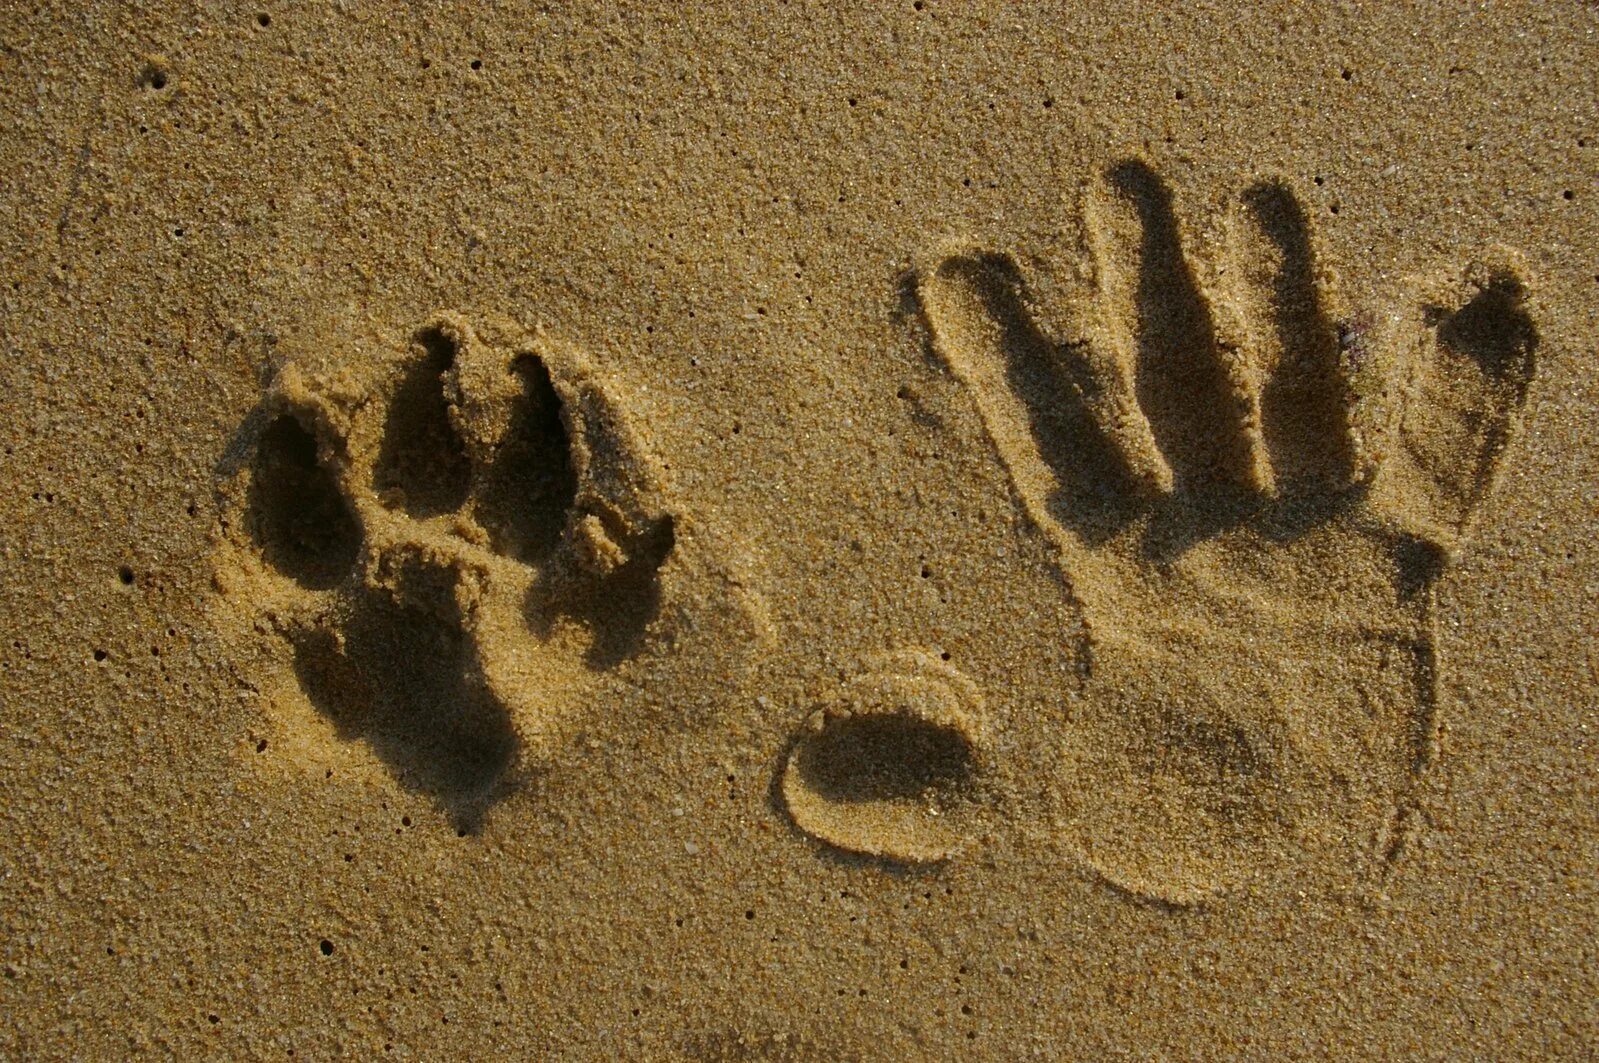 След в истории. Следы животных на песке. Отпечатки лап на песке. Следы собаки на песке. Следы собаки и человека на песке.